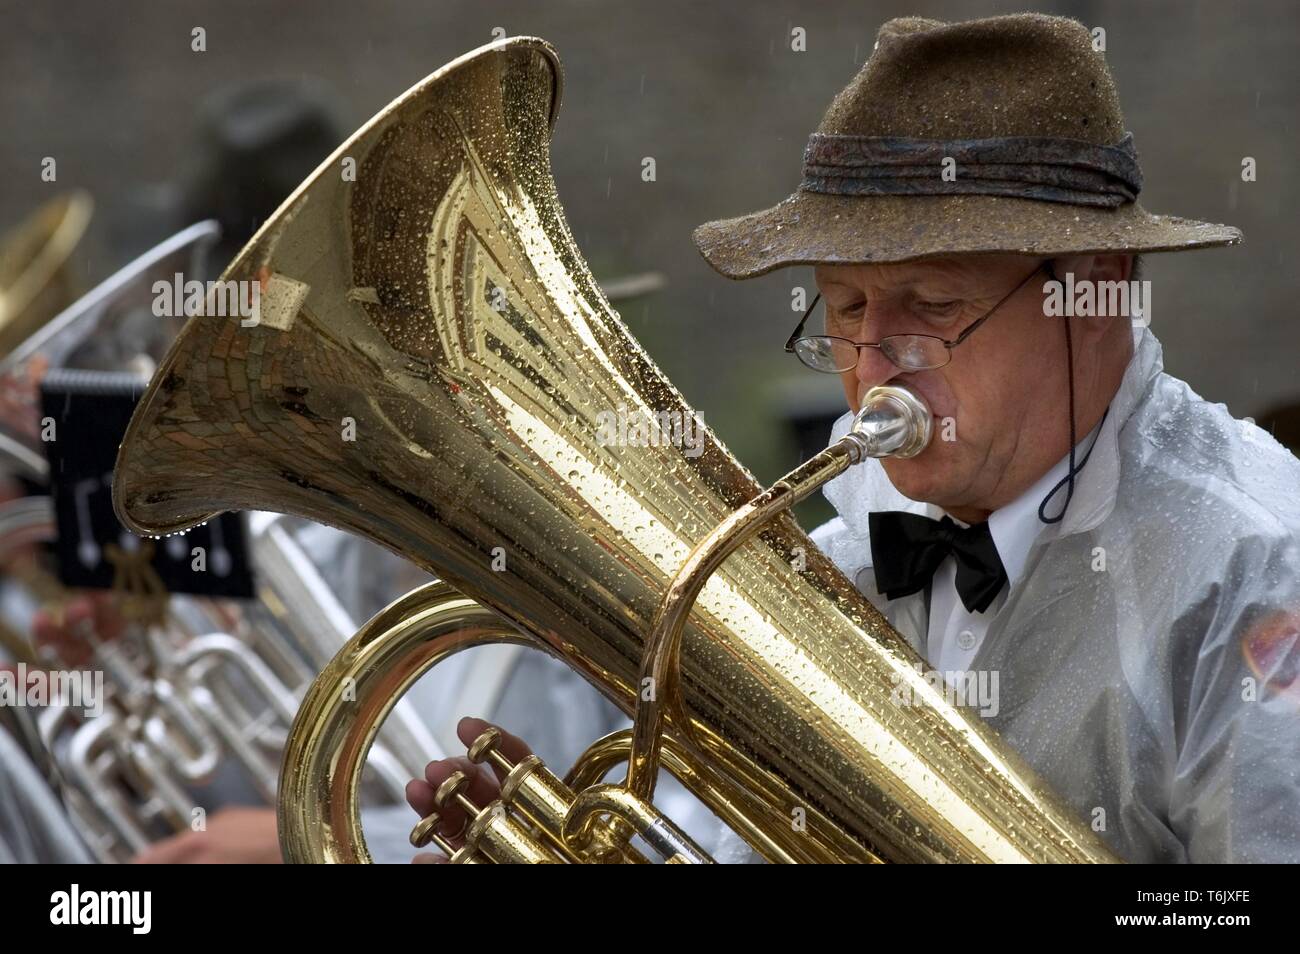 A Brass Band in Rain Stock Photo